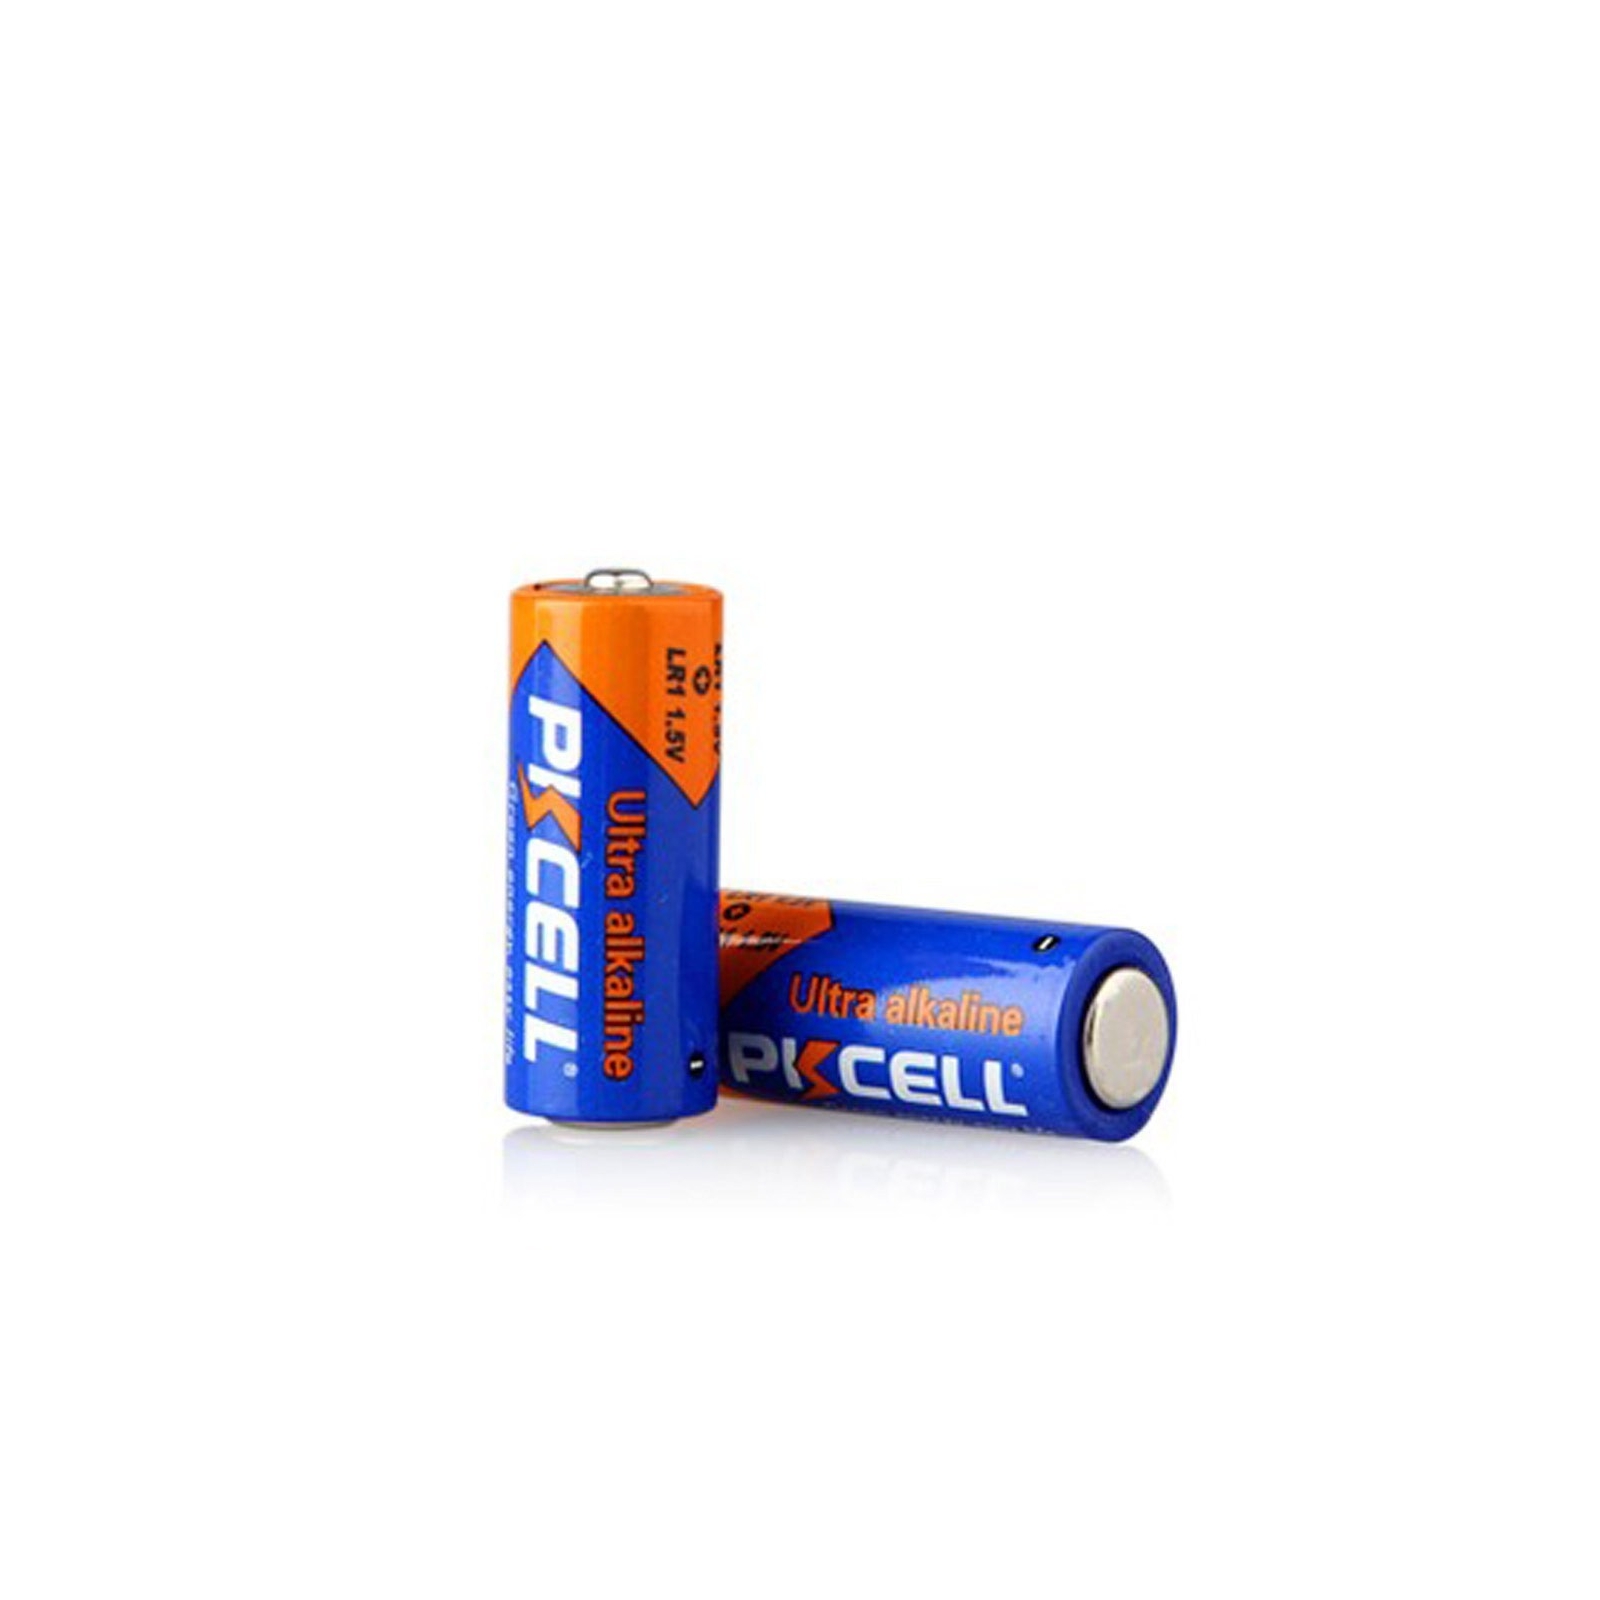 Piles LR1 1.5V Ultra Alcaline PKCell - EuropaLamp